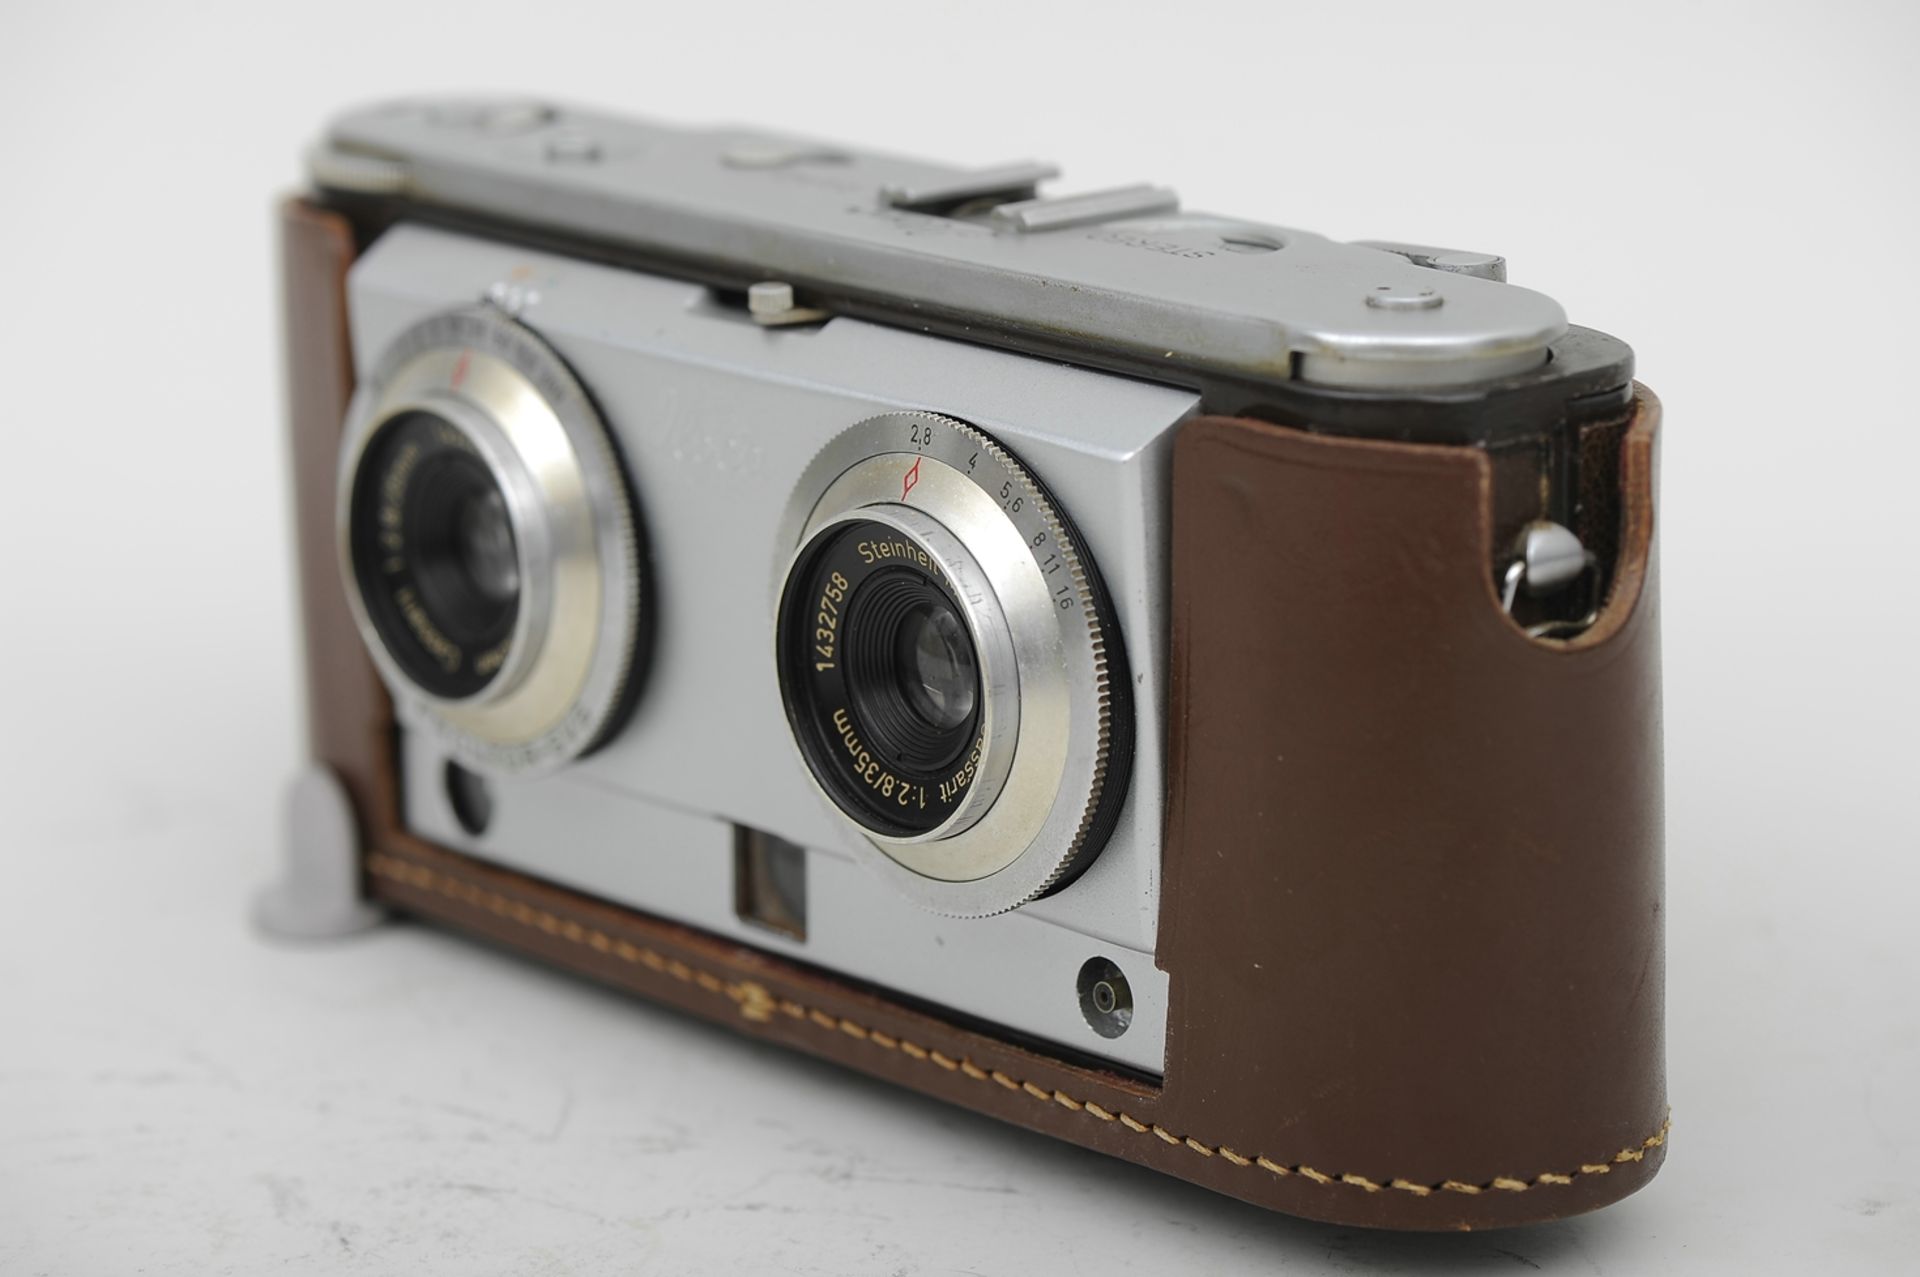 "ILOCA 3D" Stereo Rapid Kamera mit Steinheil Cassait-Objektiven 1:2,8/35 mm, No. 1432237 und 143275 - Image 5 of 7